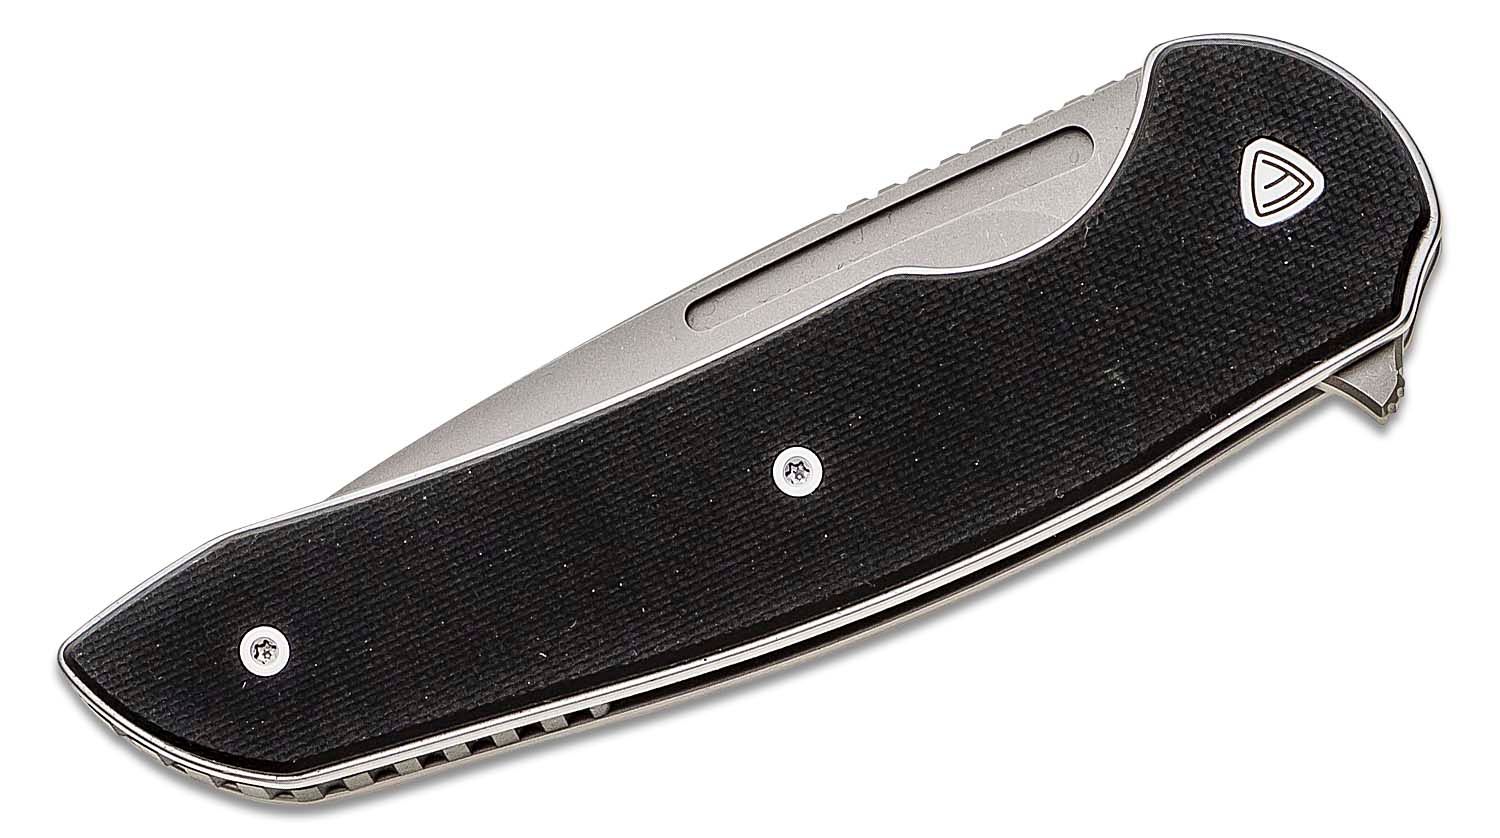 Ferrum Forge Stinger - Liner Lock Knife, Black G-10